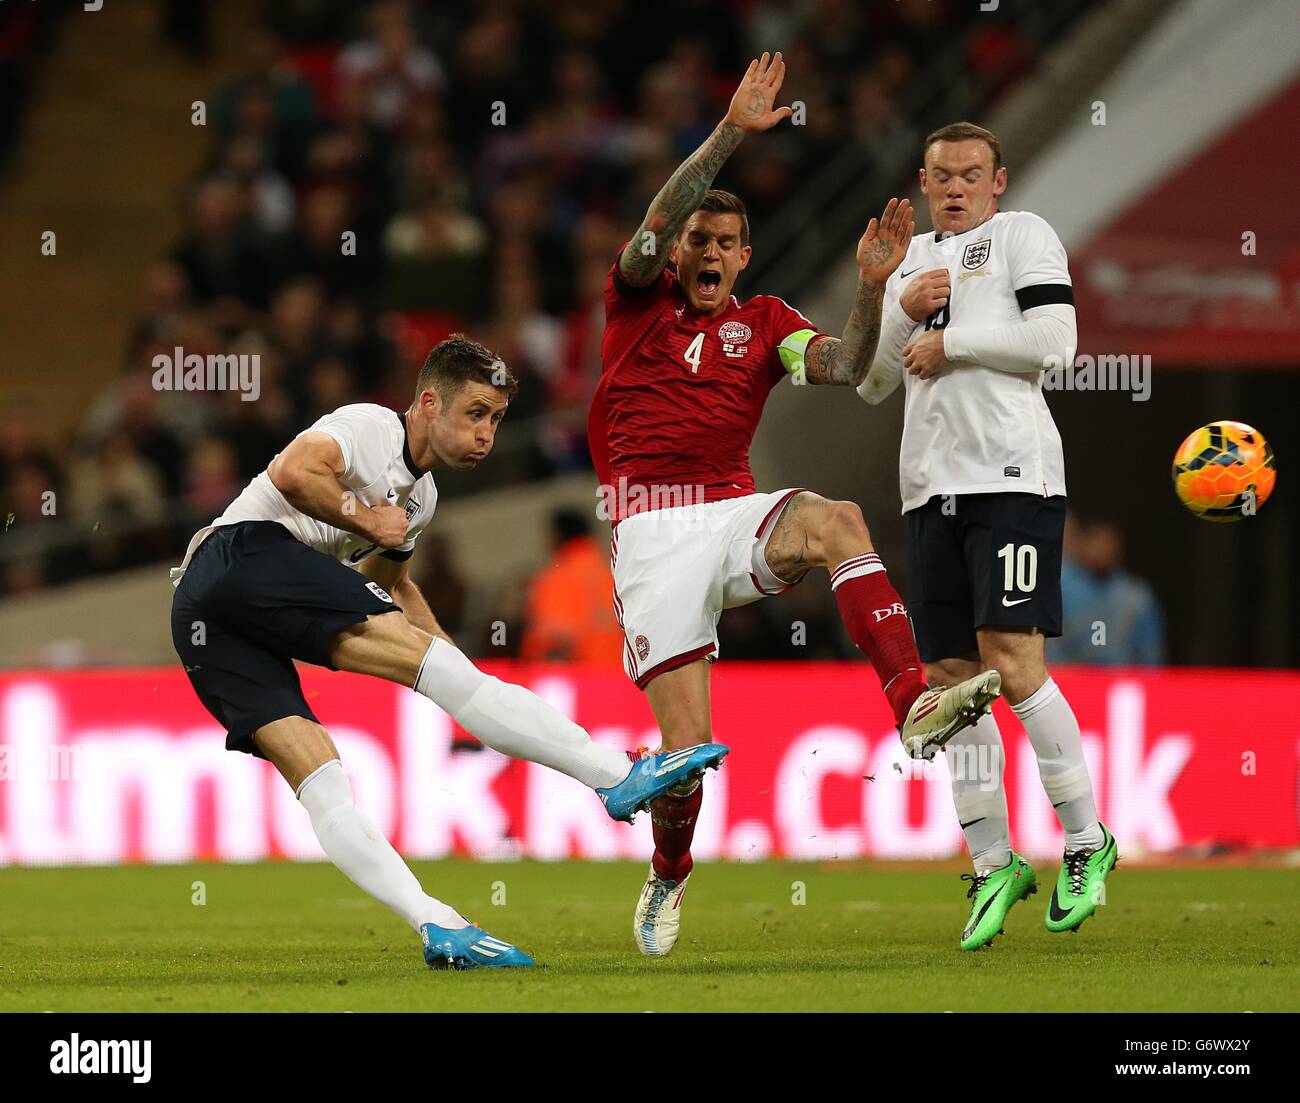 Calcio - Internazionale amichevole - Inghilterra / Danimarca - Stadio di Wembley. Gary Cahill (a sinistra) in Inghilterra ha un colpo su Goal, sotto la pressione del danese Daniel Agger Foto Stock